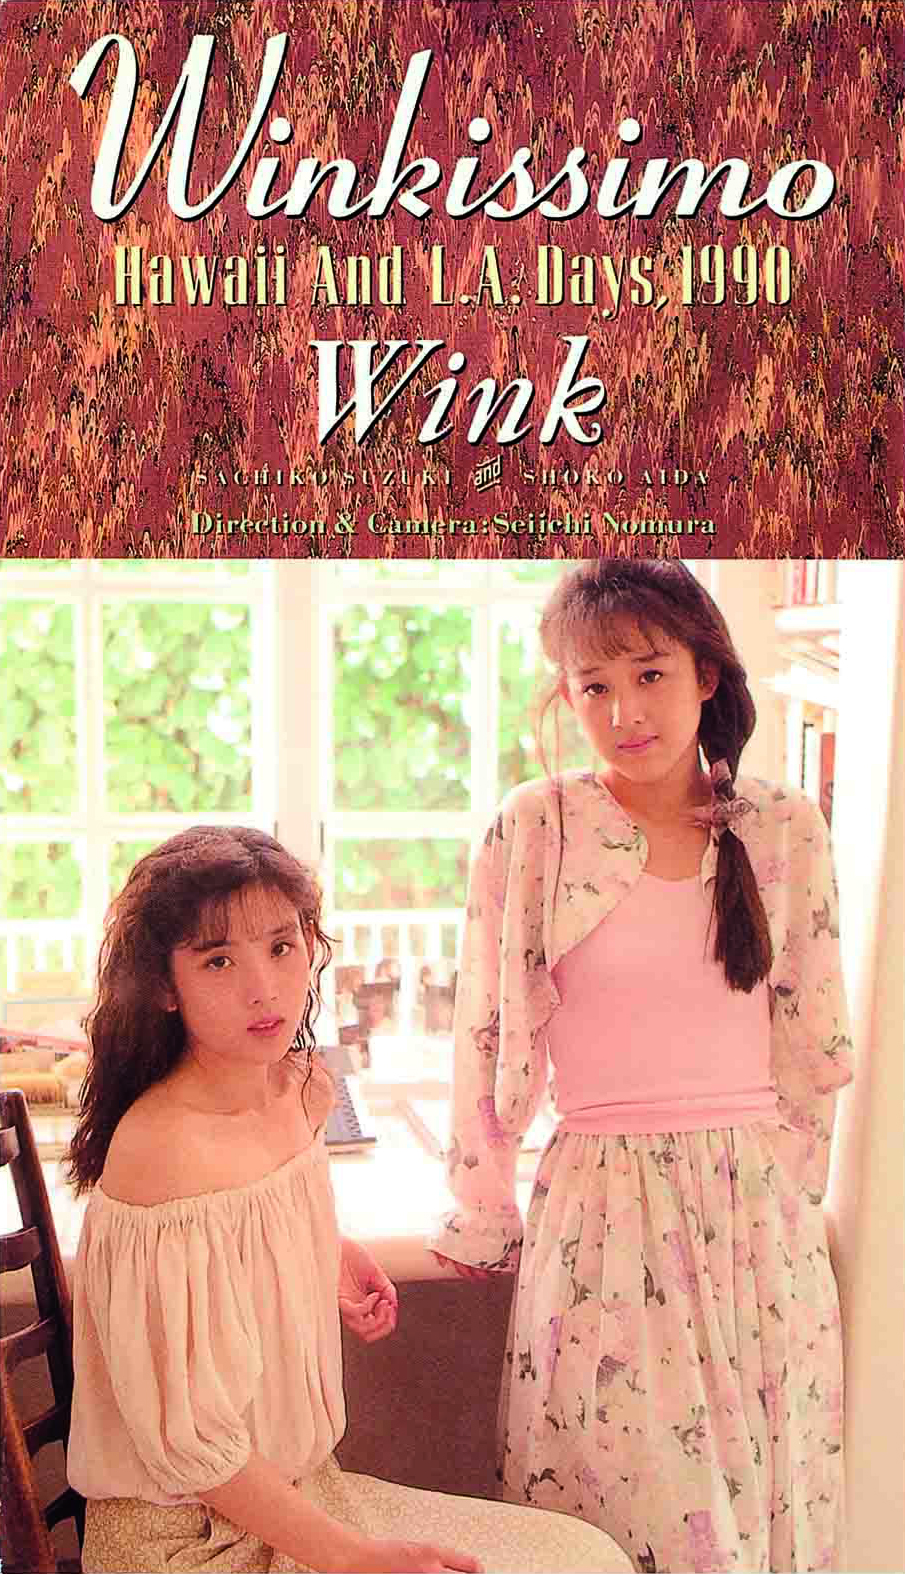 Wink 30周年特設サイト